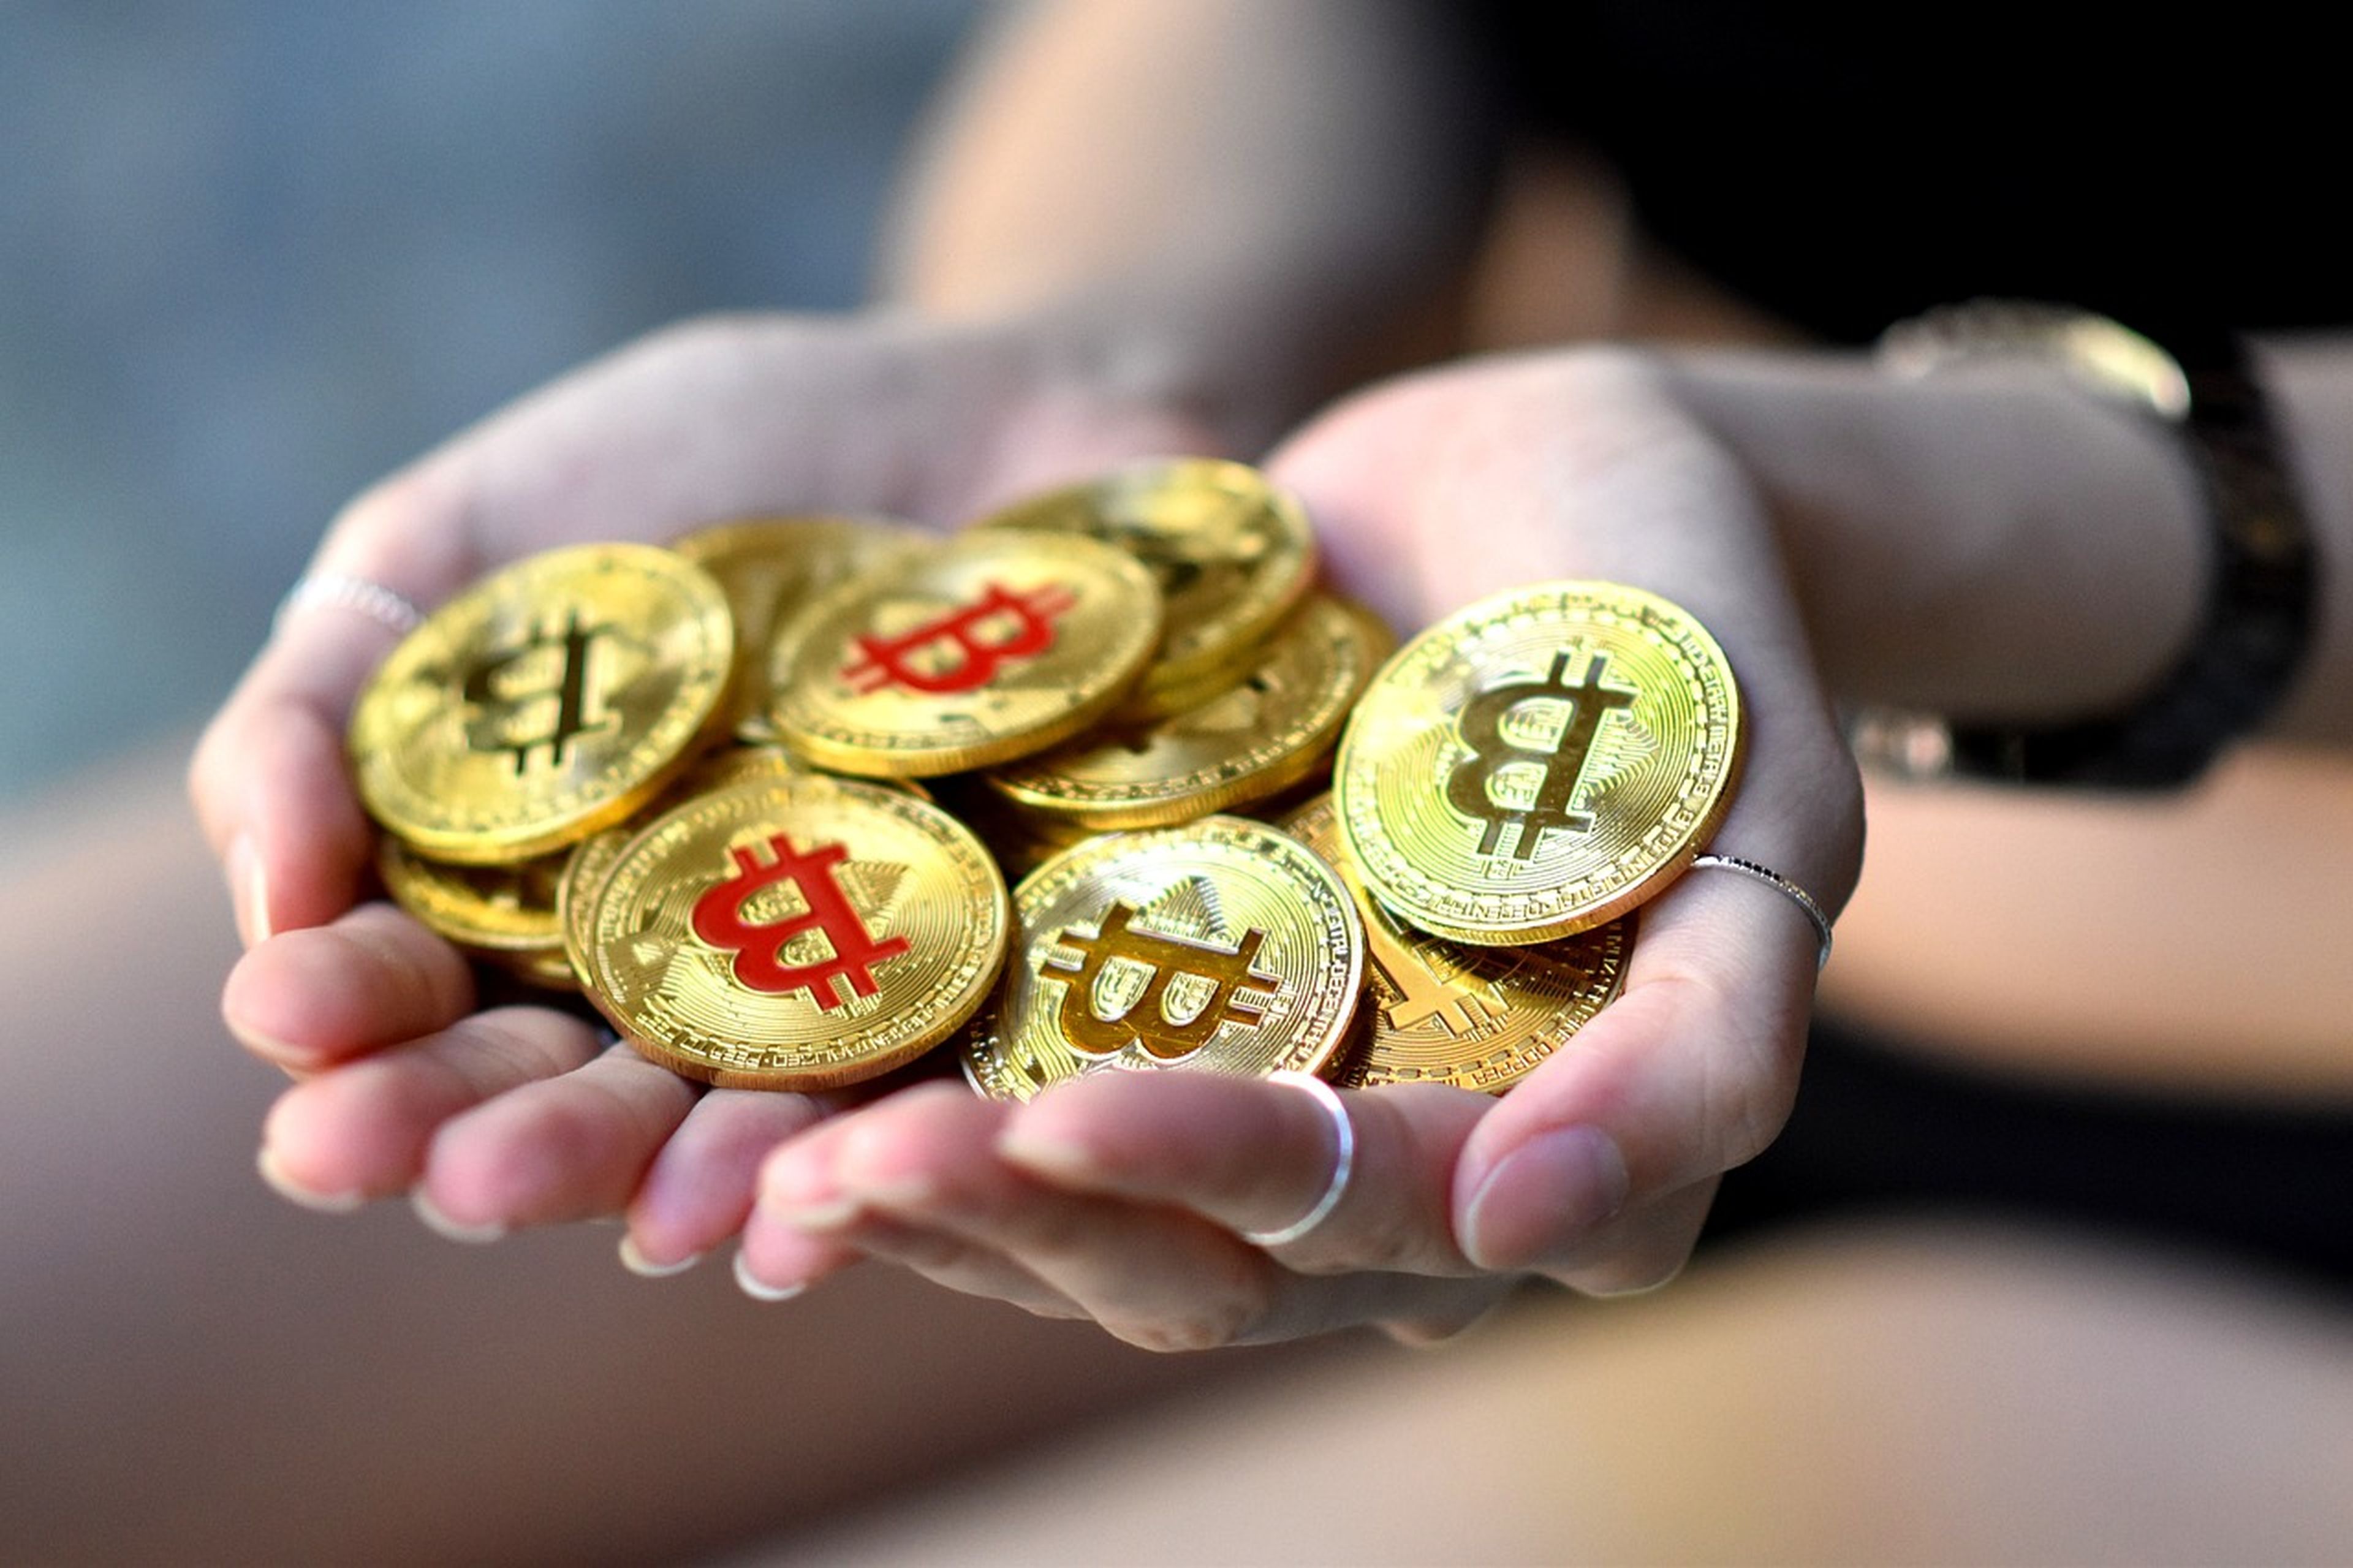 Una persona sujeta varias monedas de bitcoin.